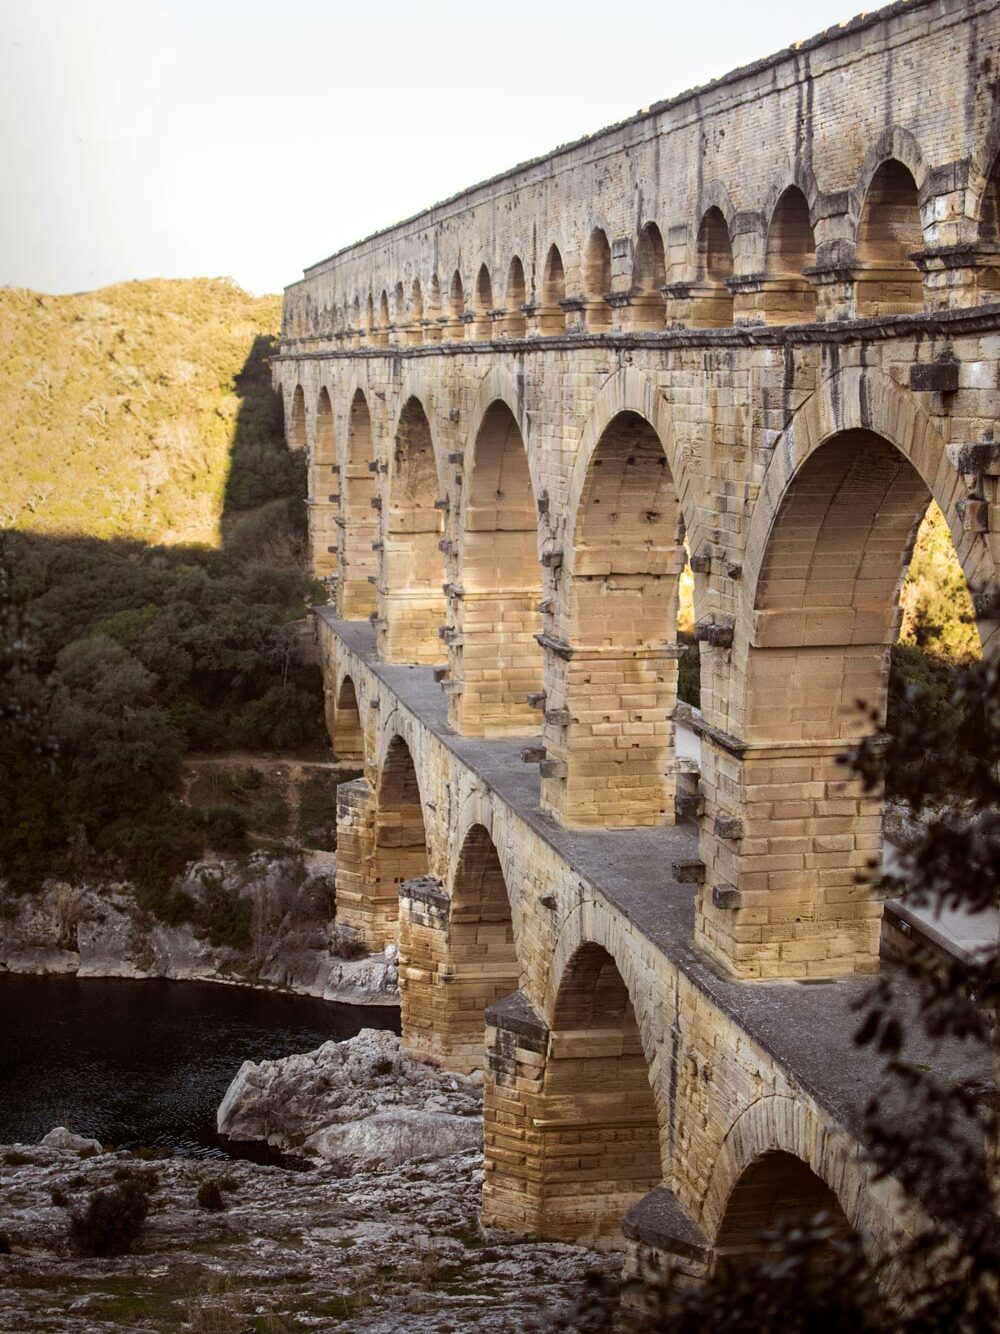 randonnée difficile au Pont du Gard département du Gard. Itinéraire, topo et recommandations. Blog randonnée escalade trek Explore à perte de Vue